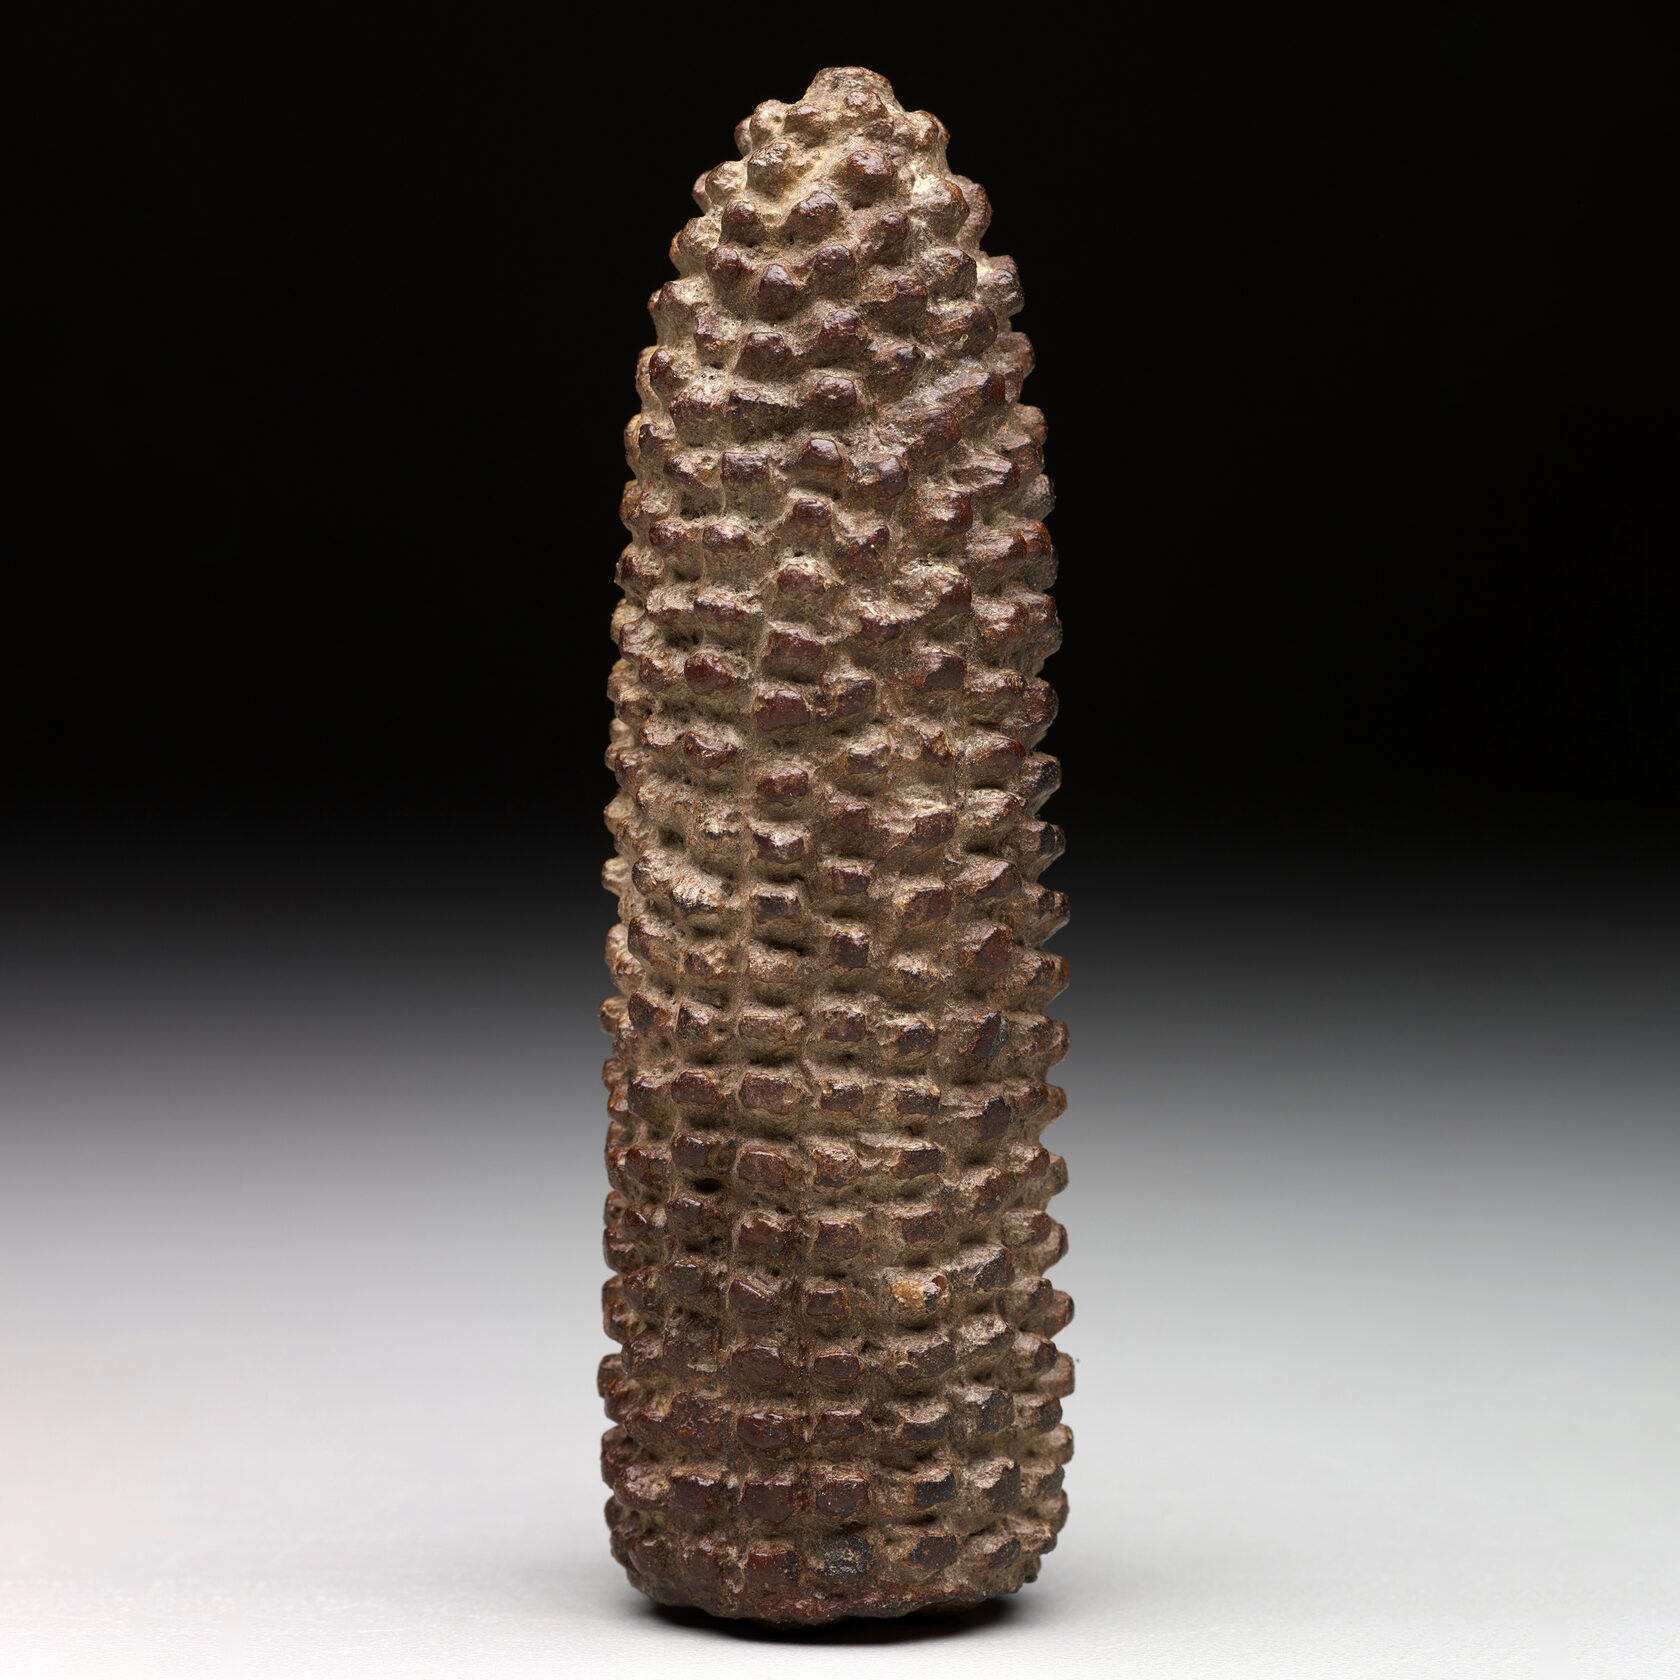 Скульптурное изображение початка кукурузы. Майя, 900-1500 гг. н.э. Коллекция Dallas Museum of Art.